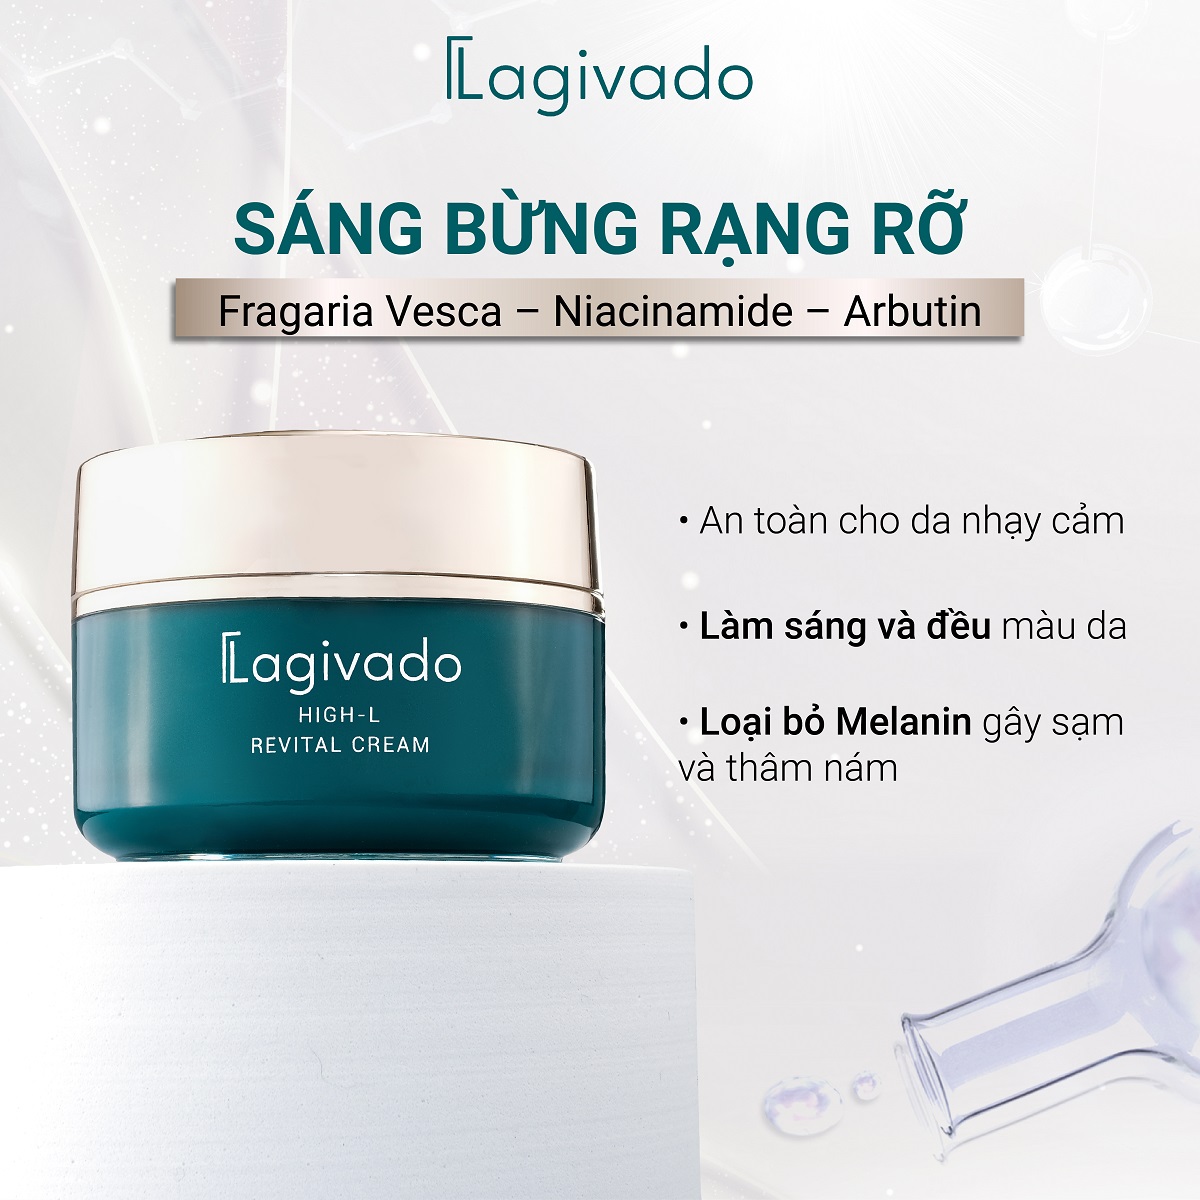 Kem dưỡng mờ thâm nám, đốm nâu Lagivado High-L Revital Cream với Fragaria vesca 51,4% - 50 g